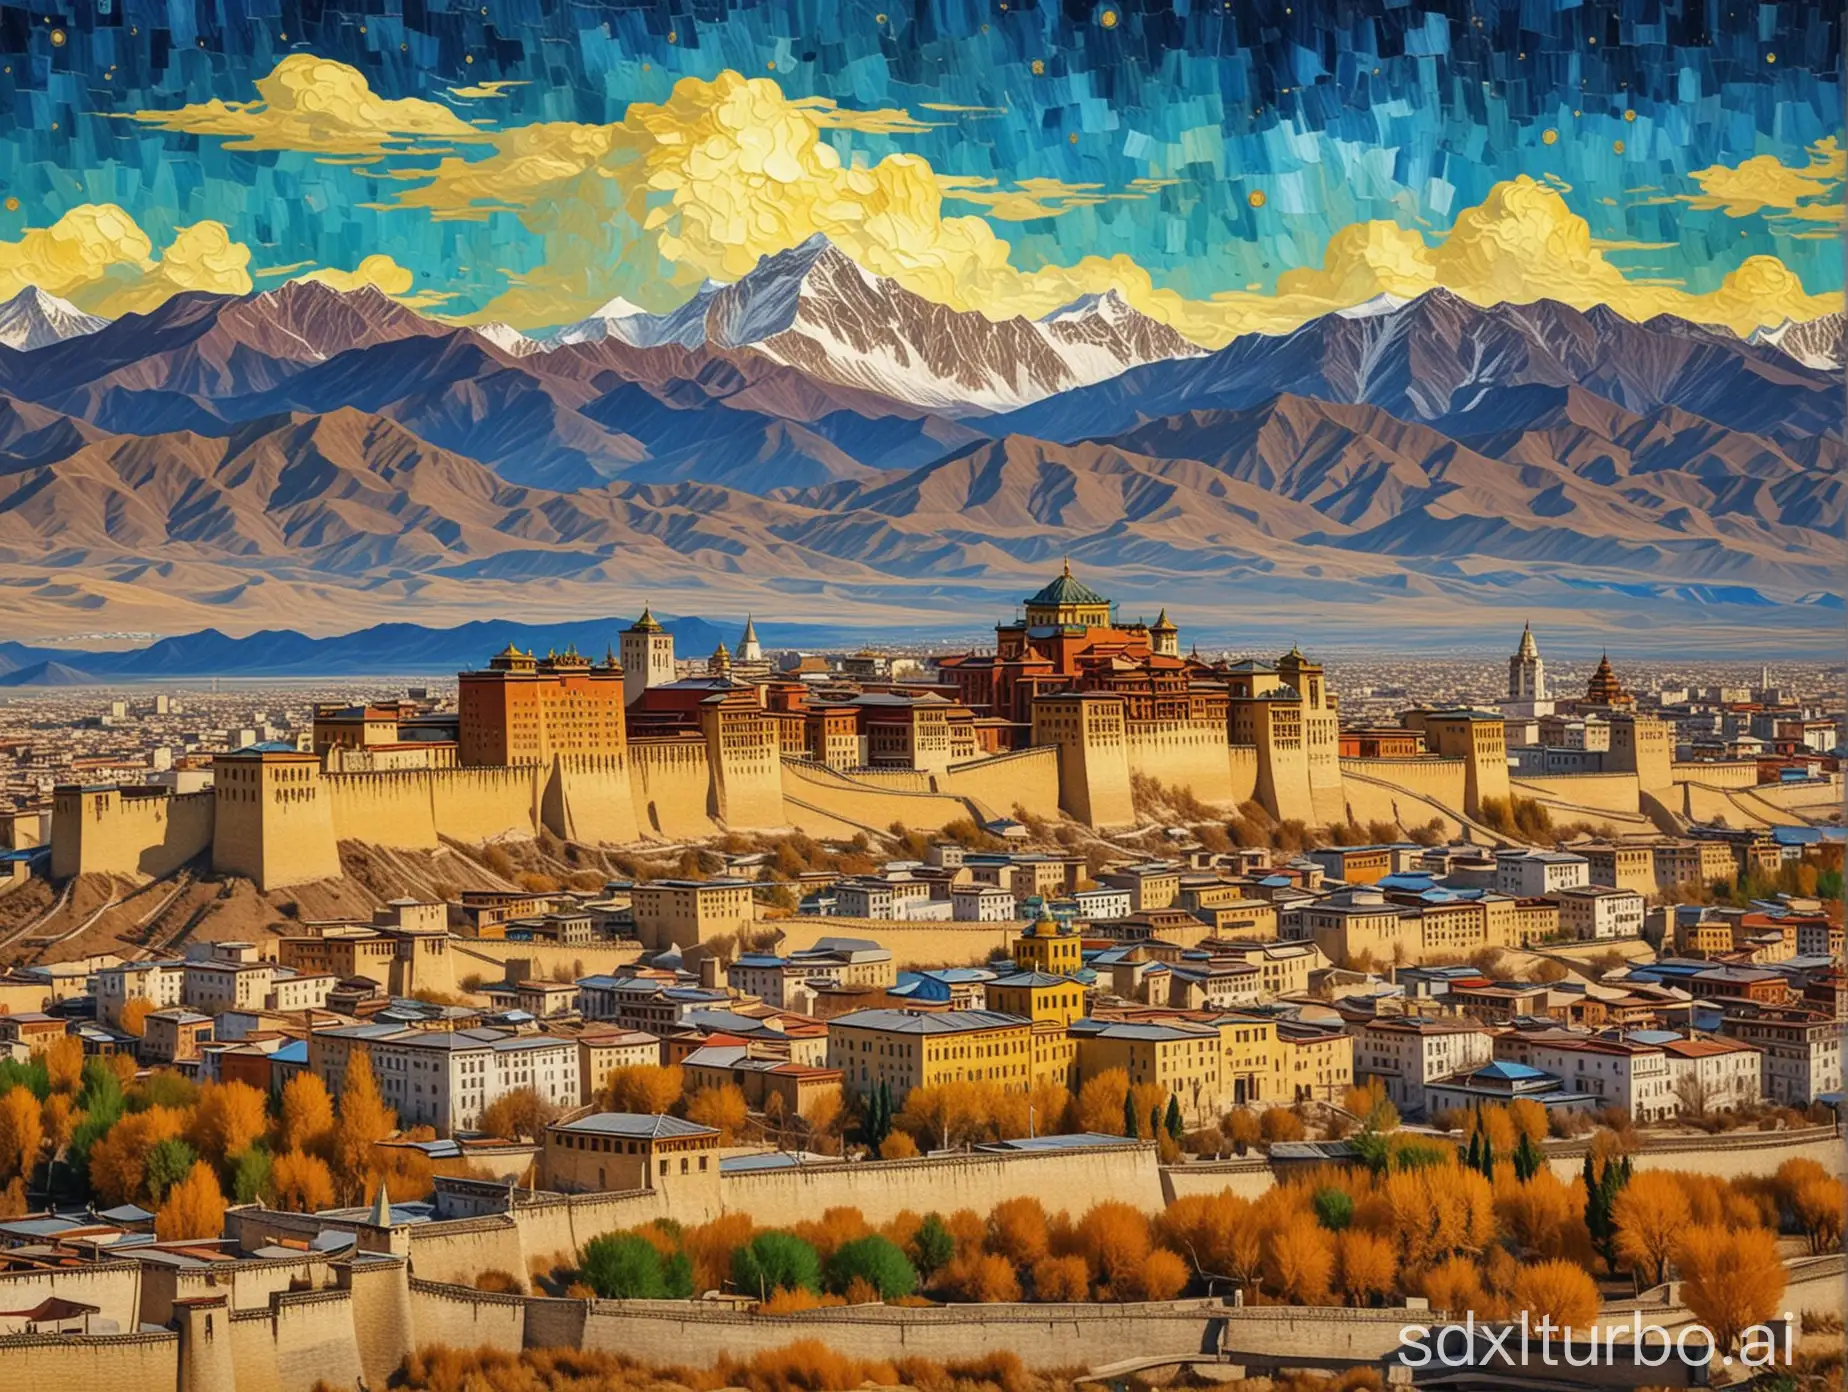 Lhasa skyline Van Gogh